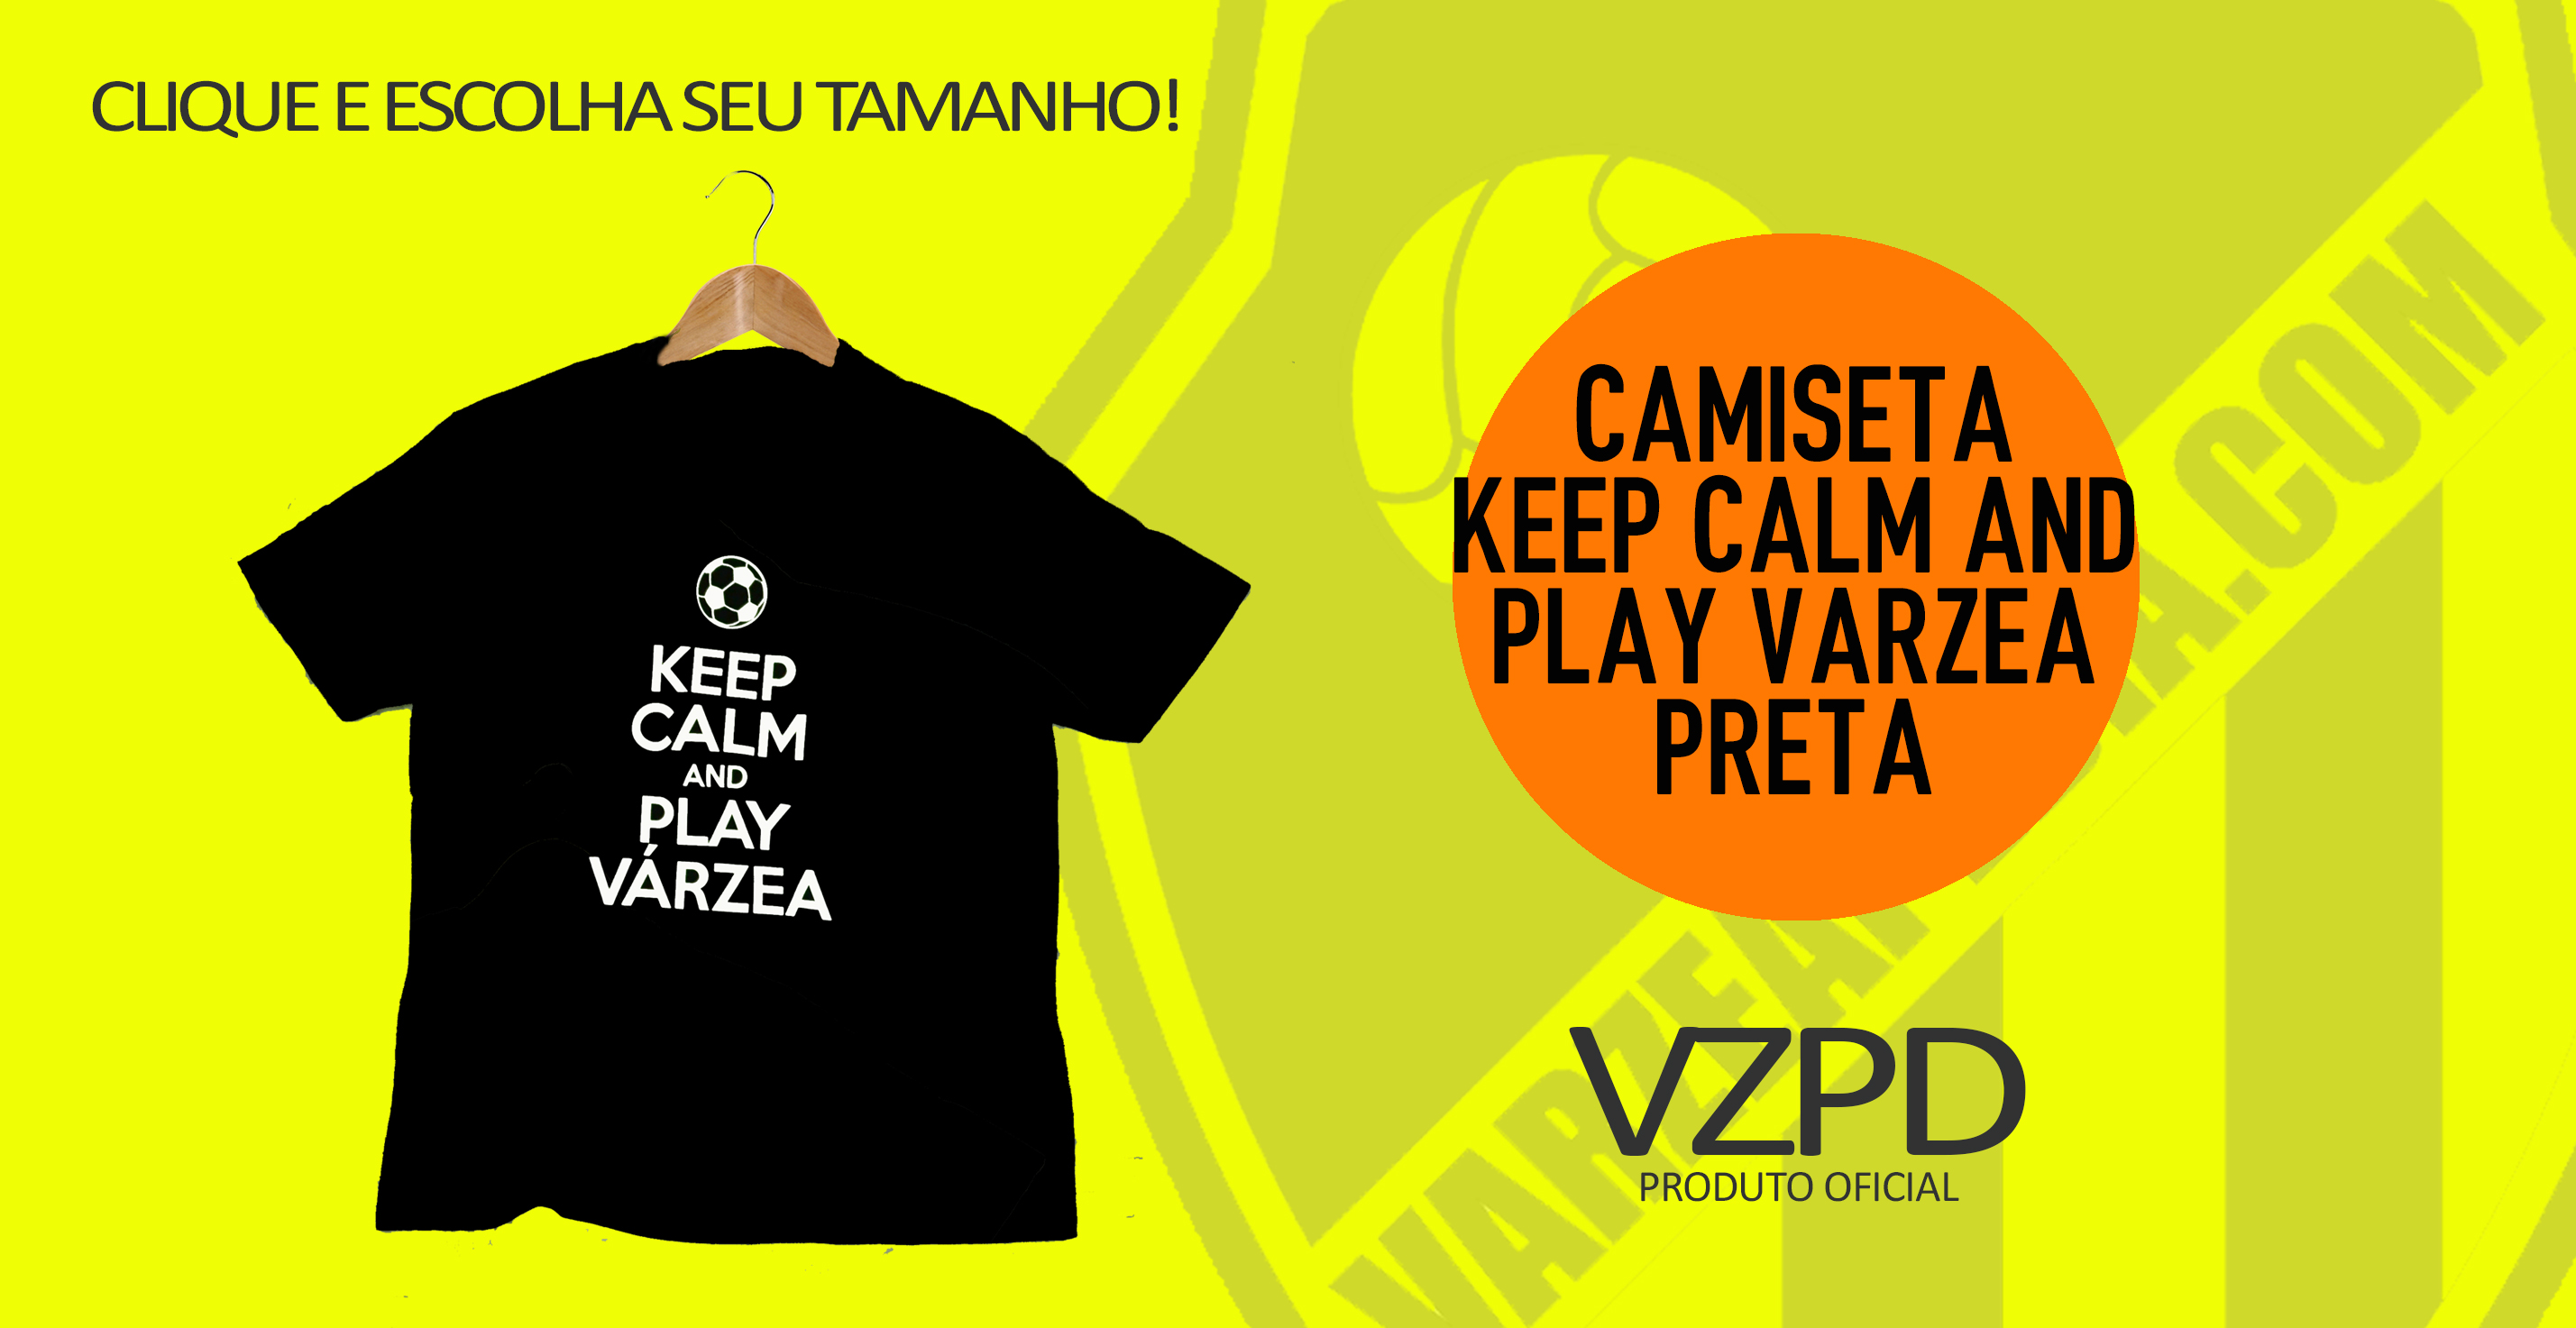 Camiseta keep calm and play varzea preta